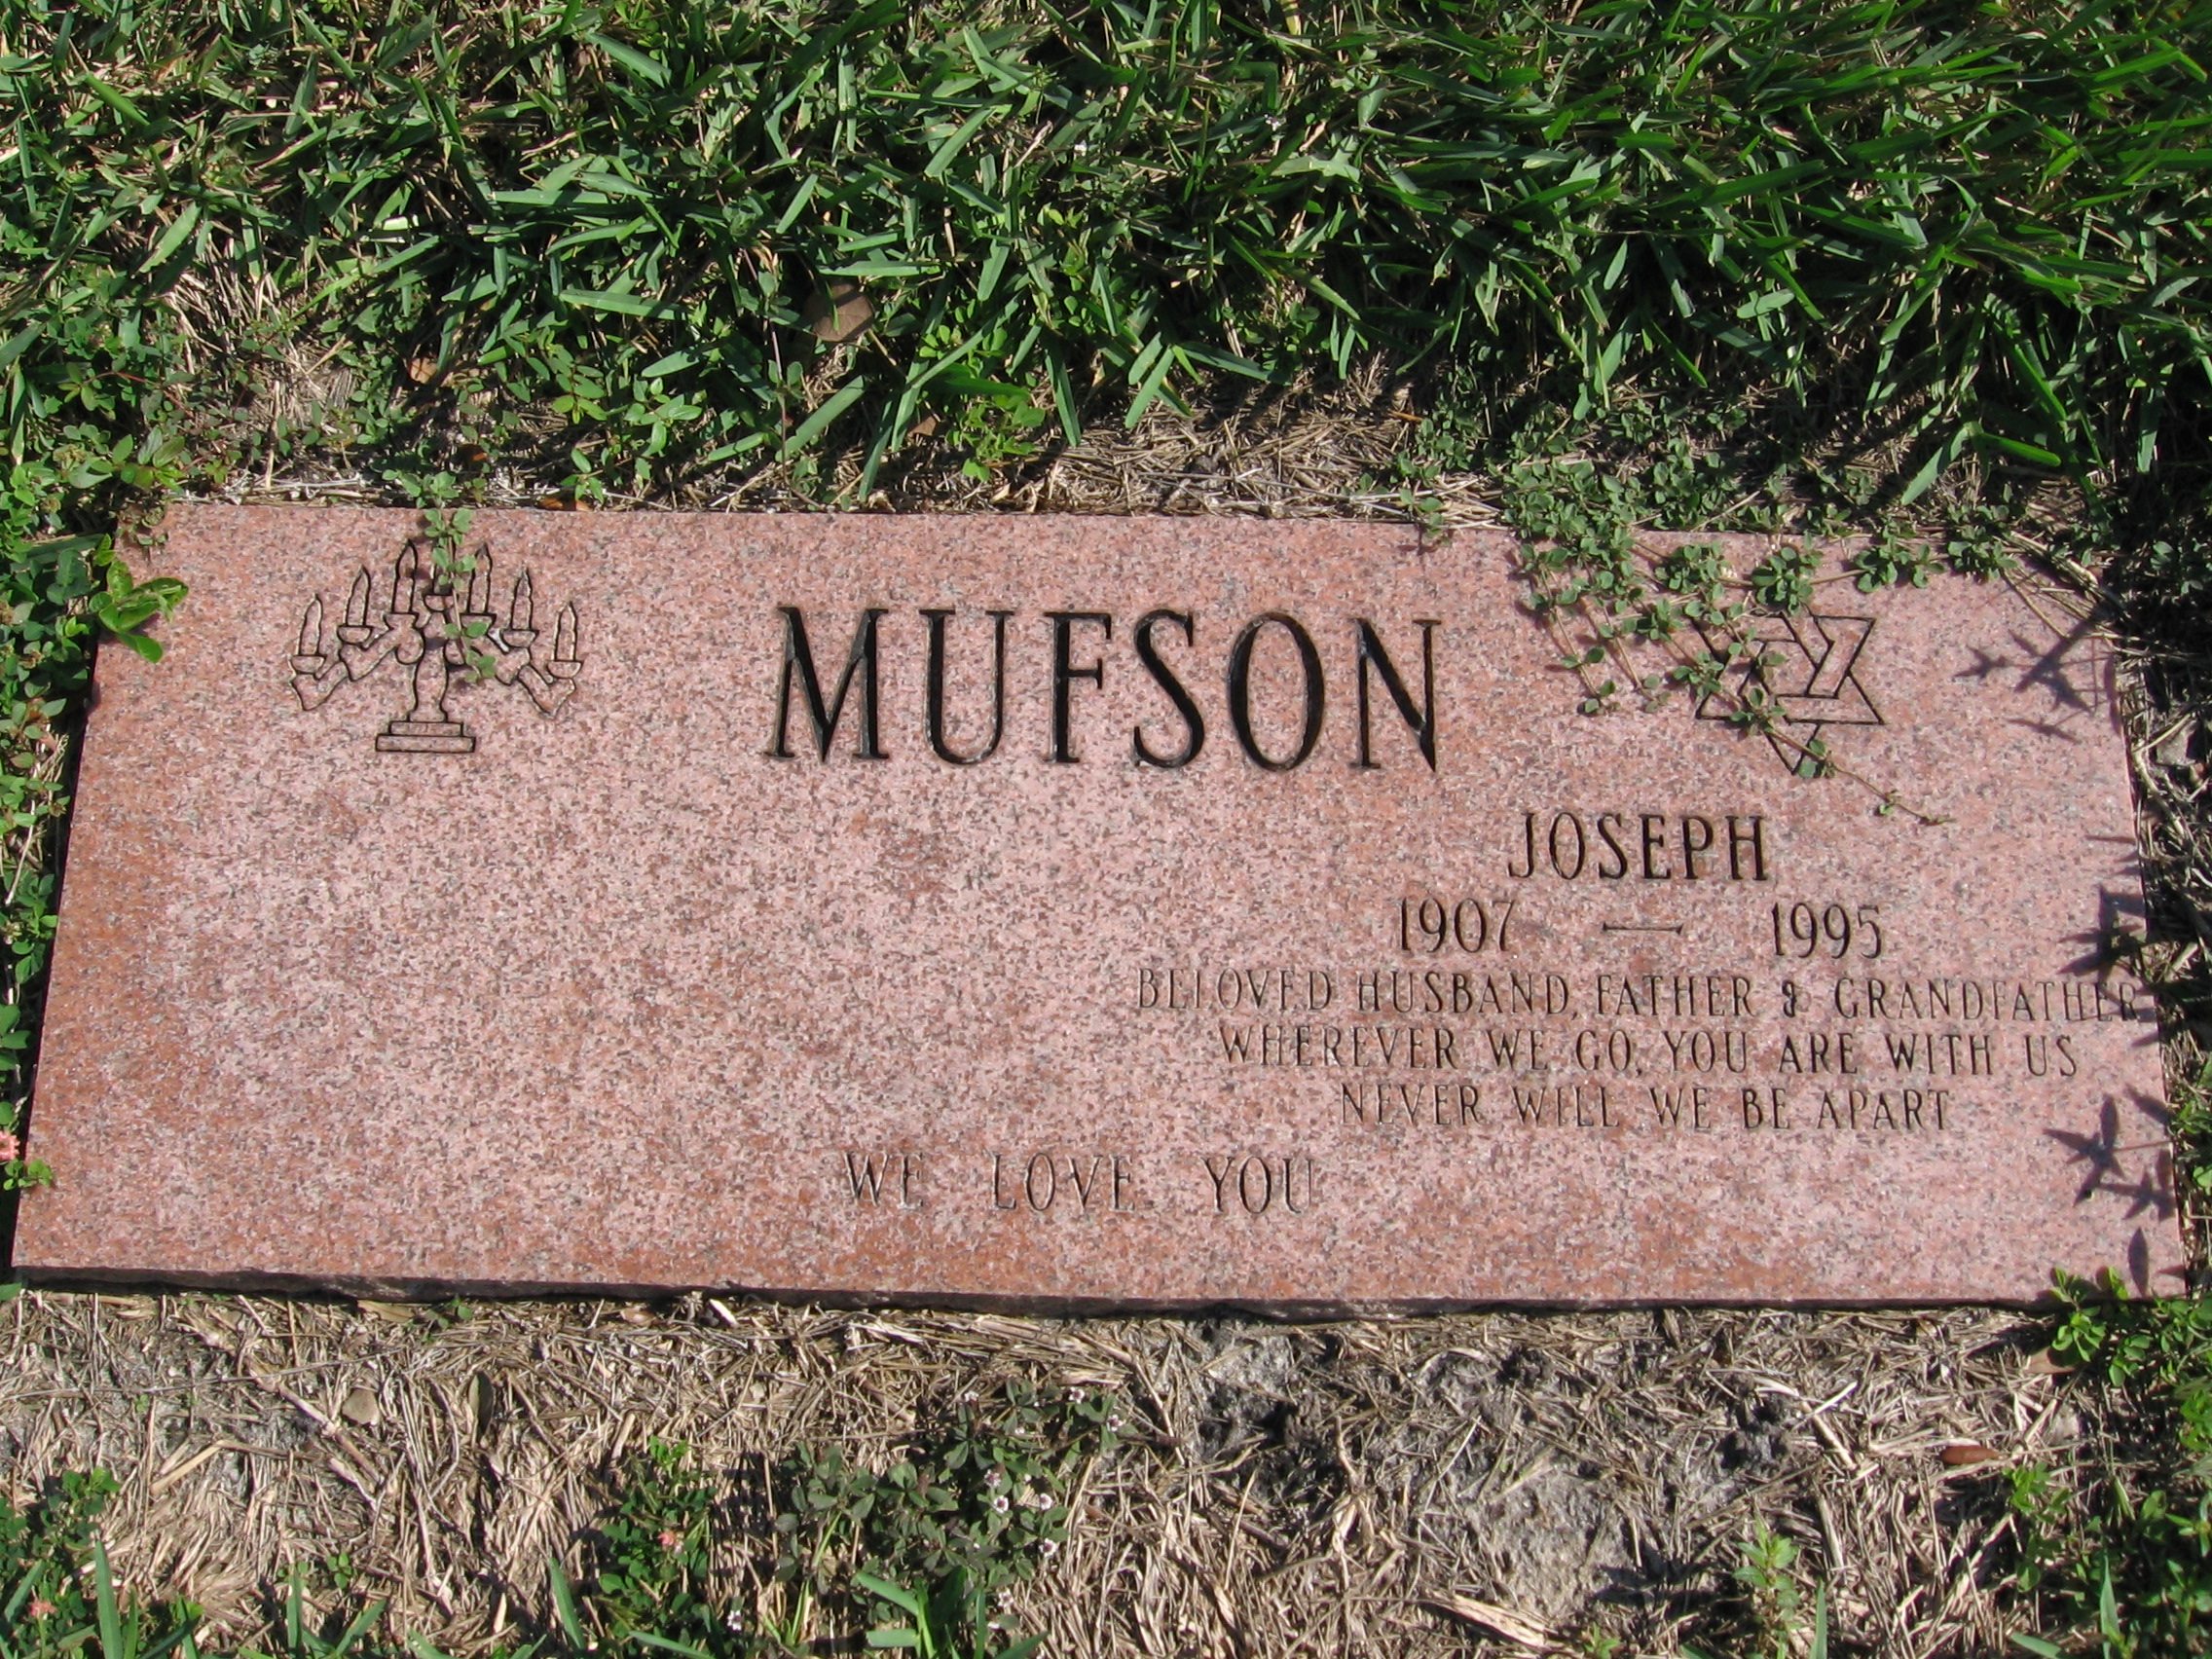 Joseph Mufson